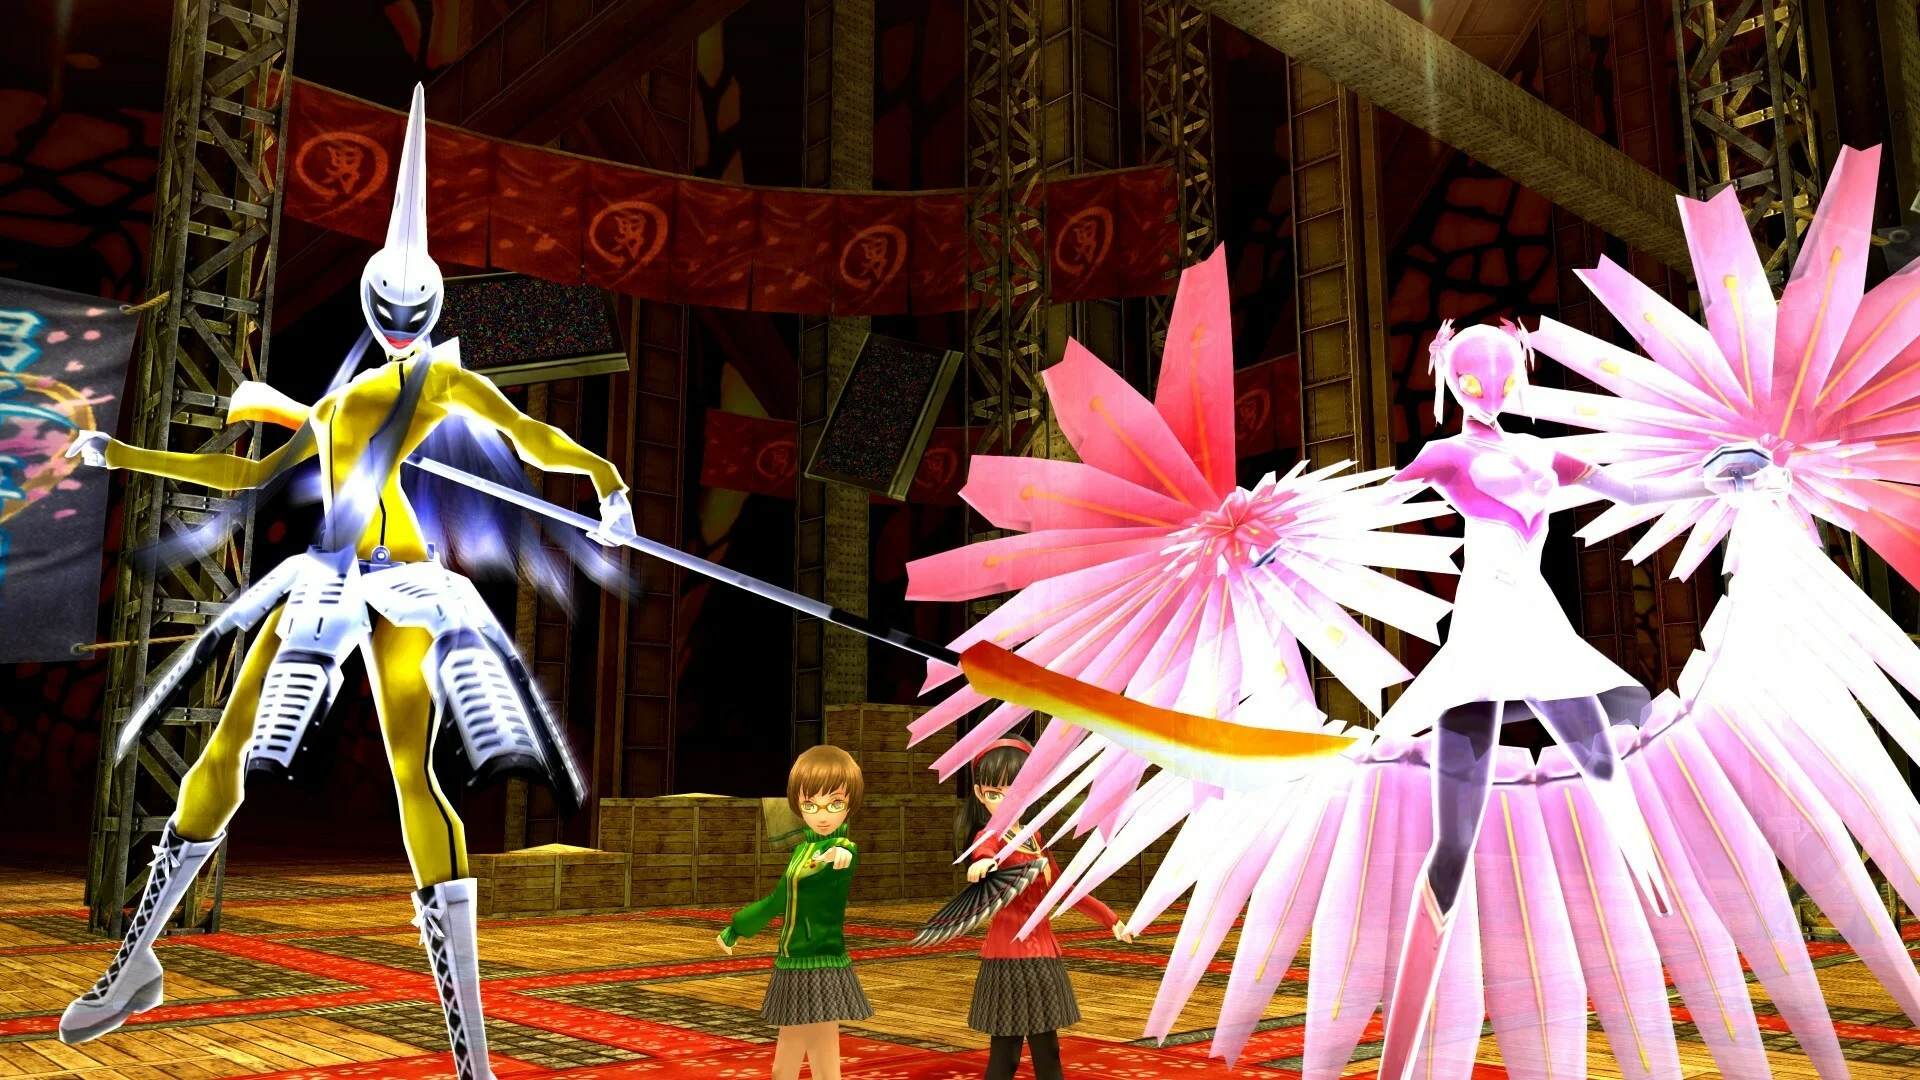 Persona 4 Golden на PC. Почему порт старой японской RPG вышел в топы продаж Steam? - фото 10